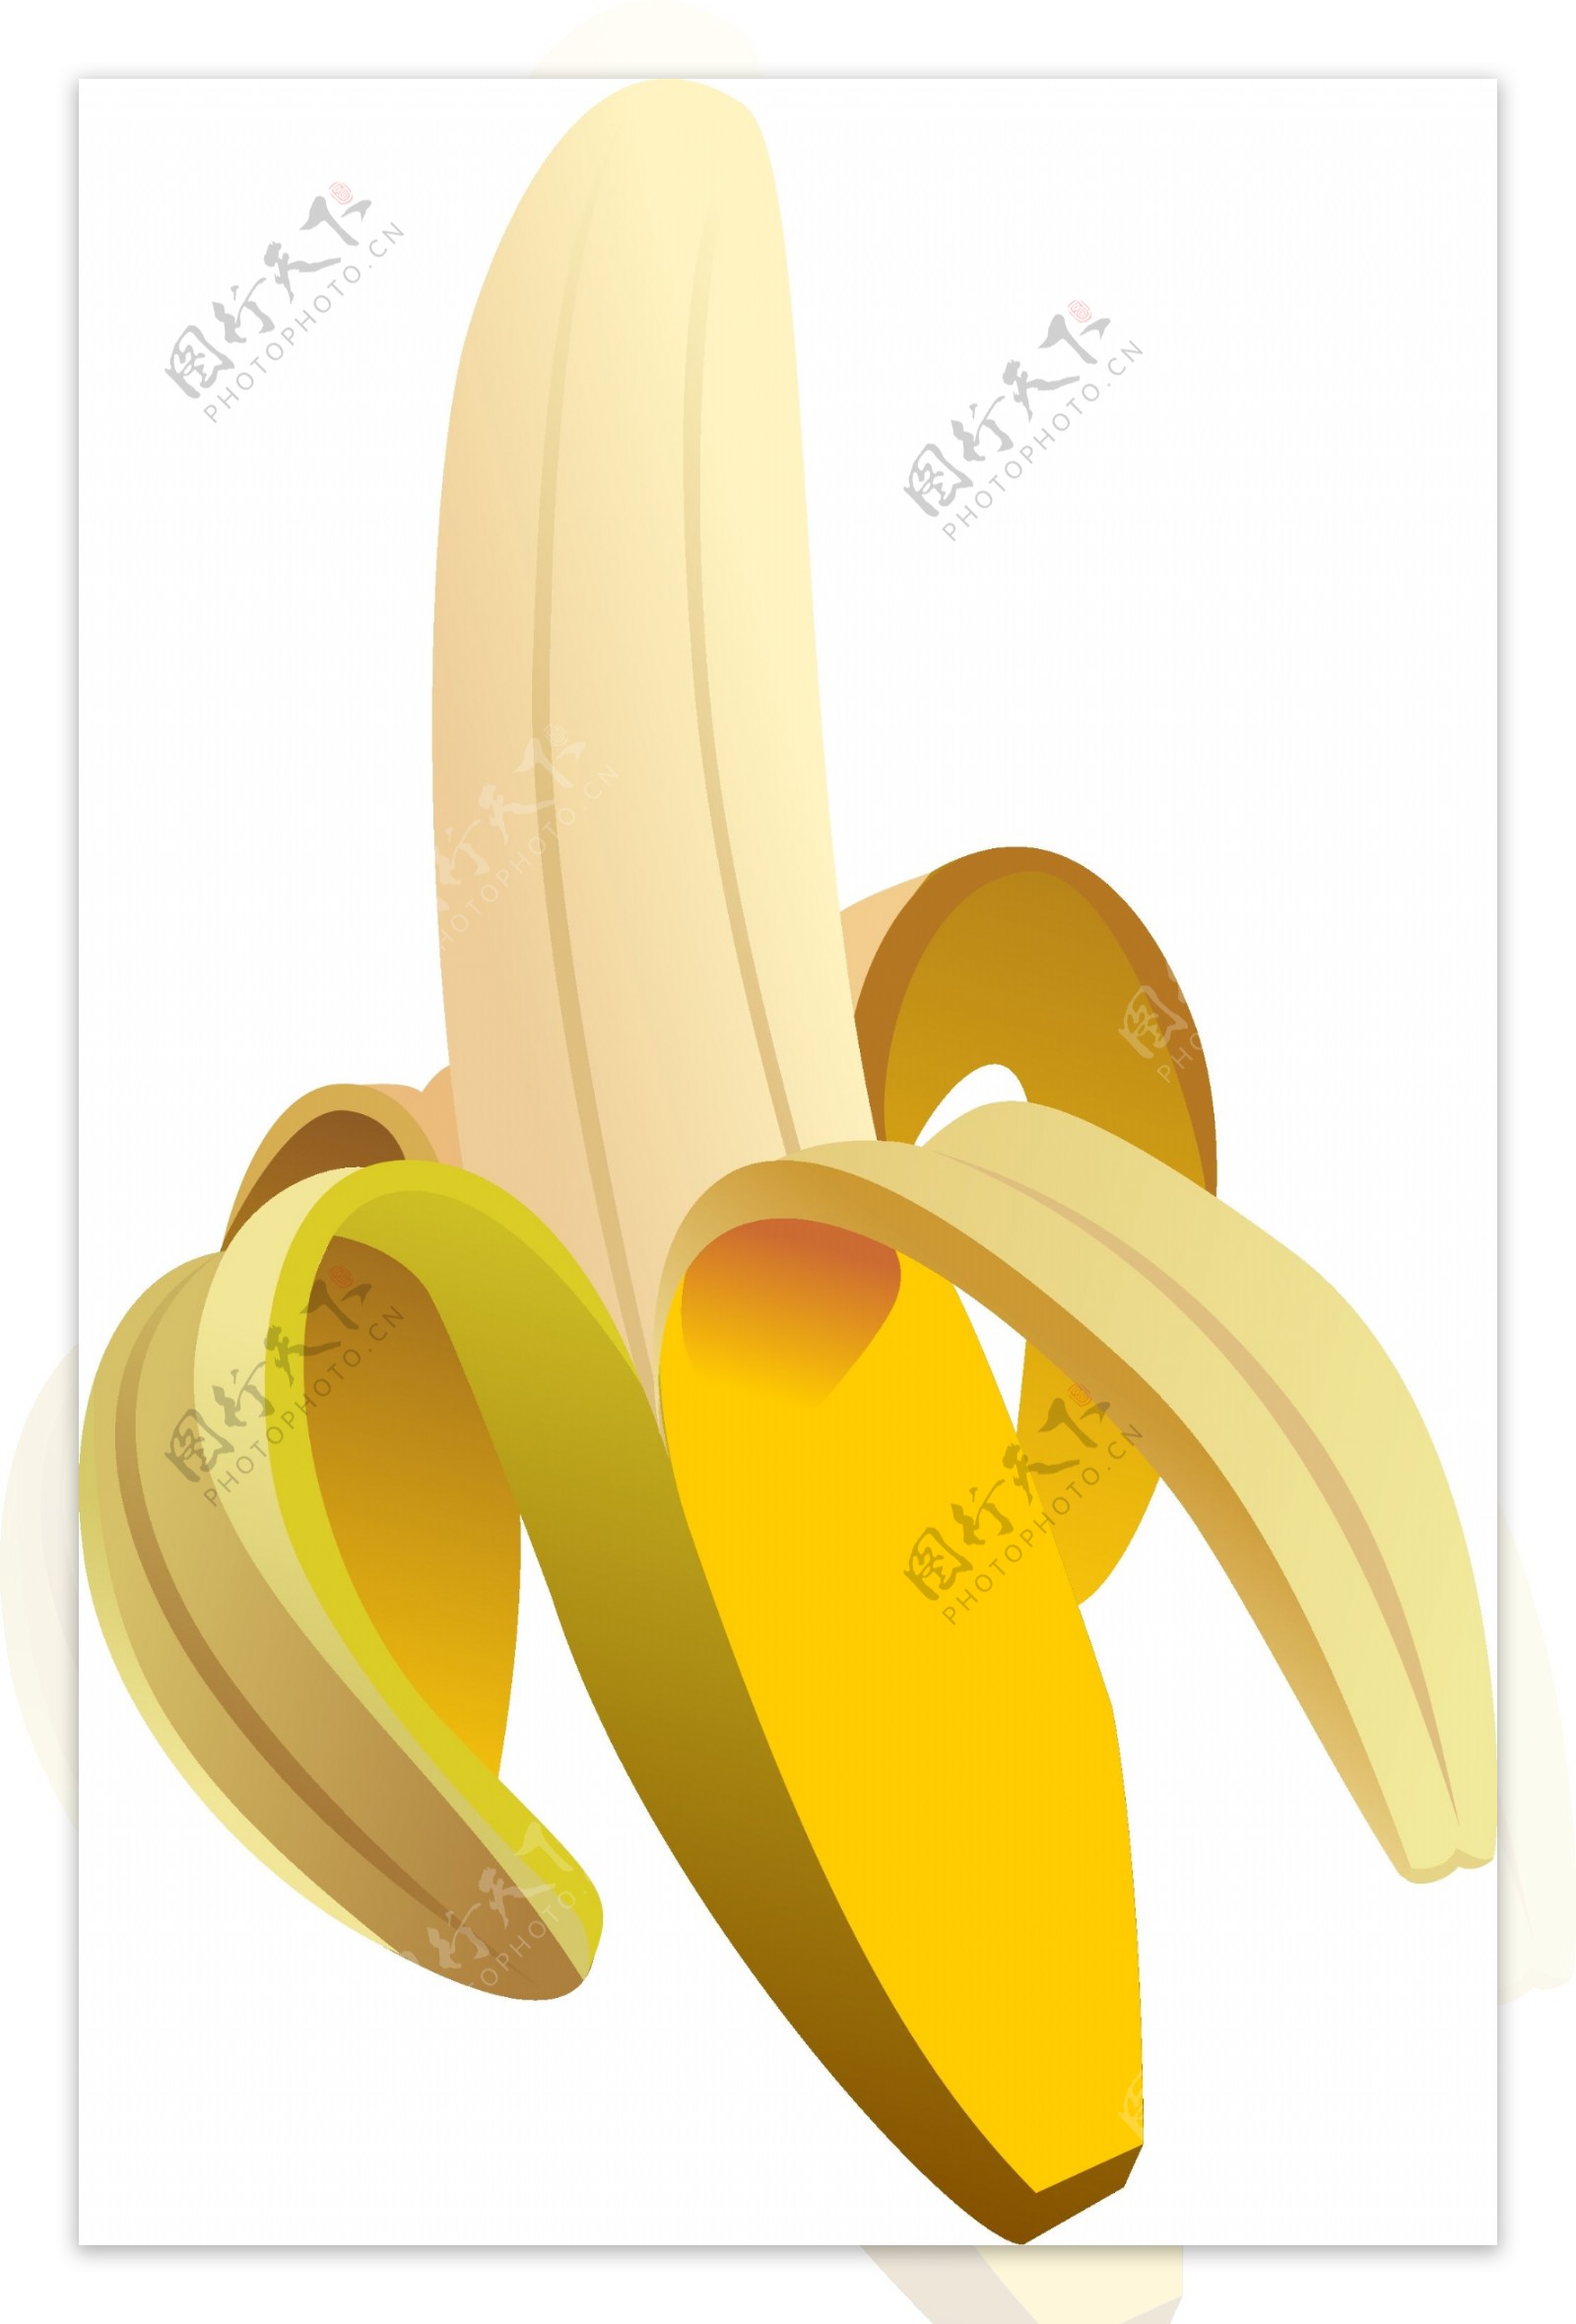 香蕉矢量图图片